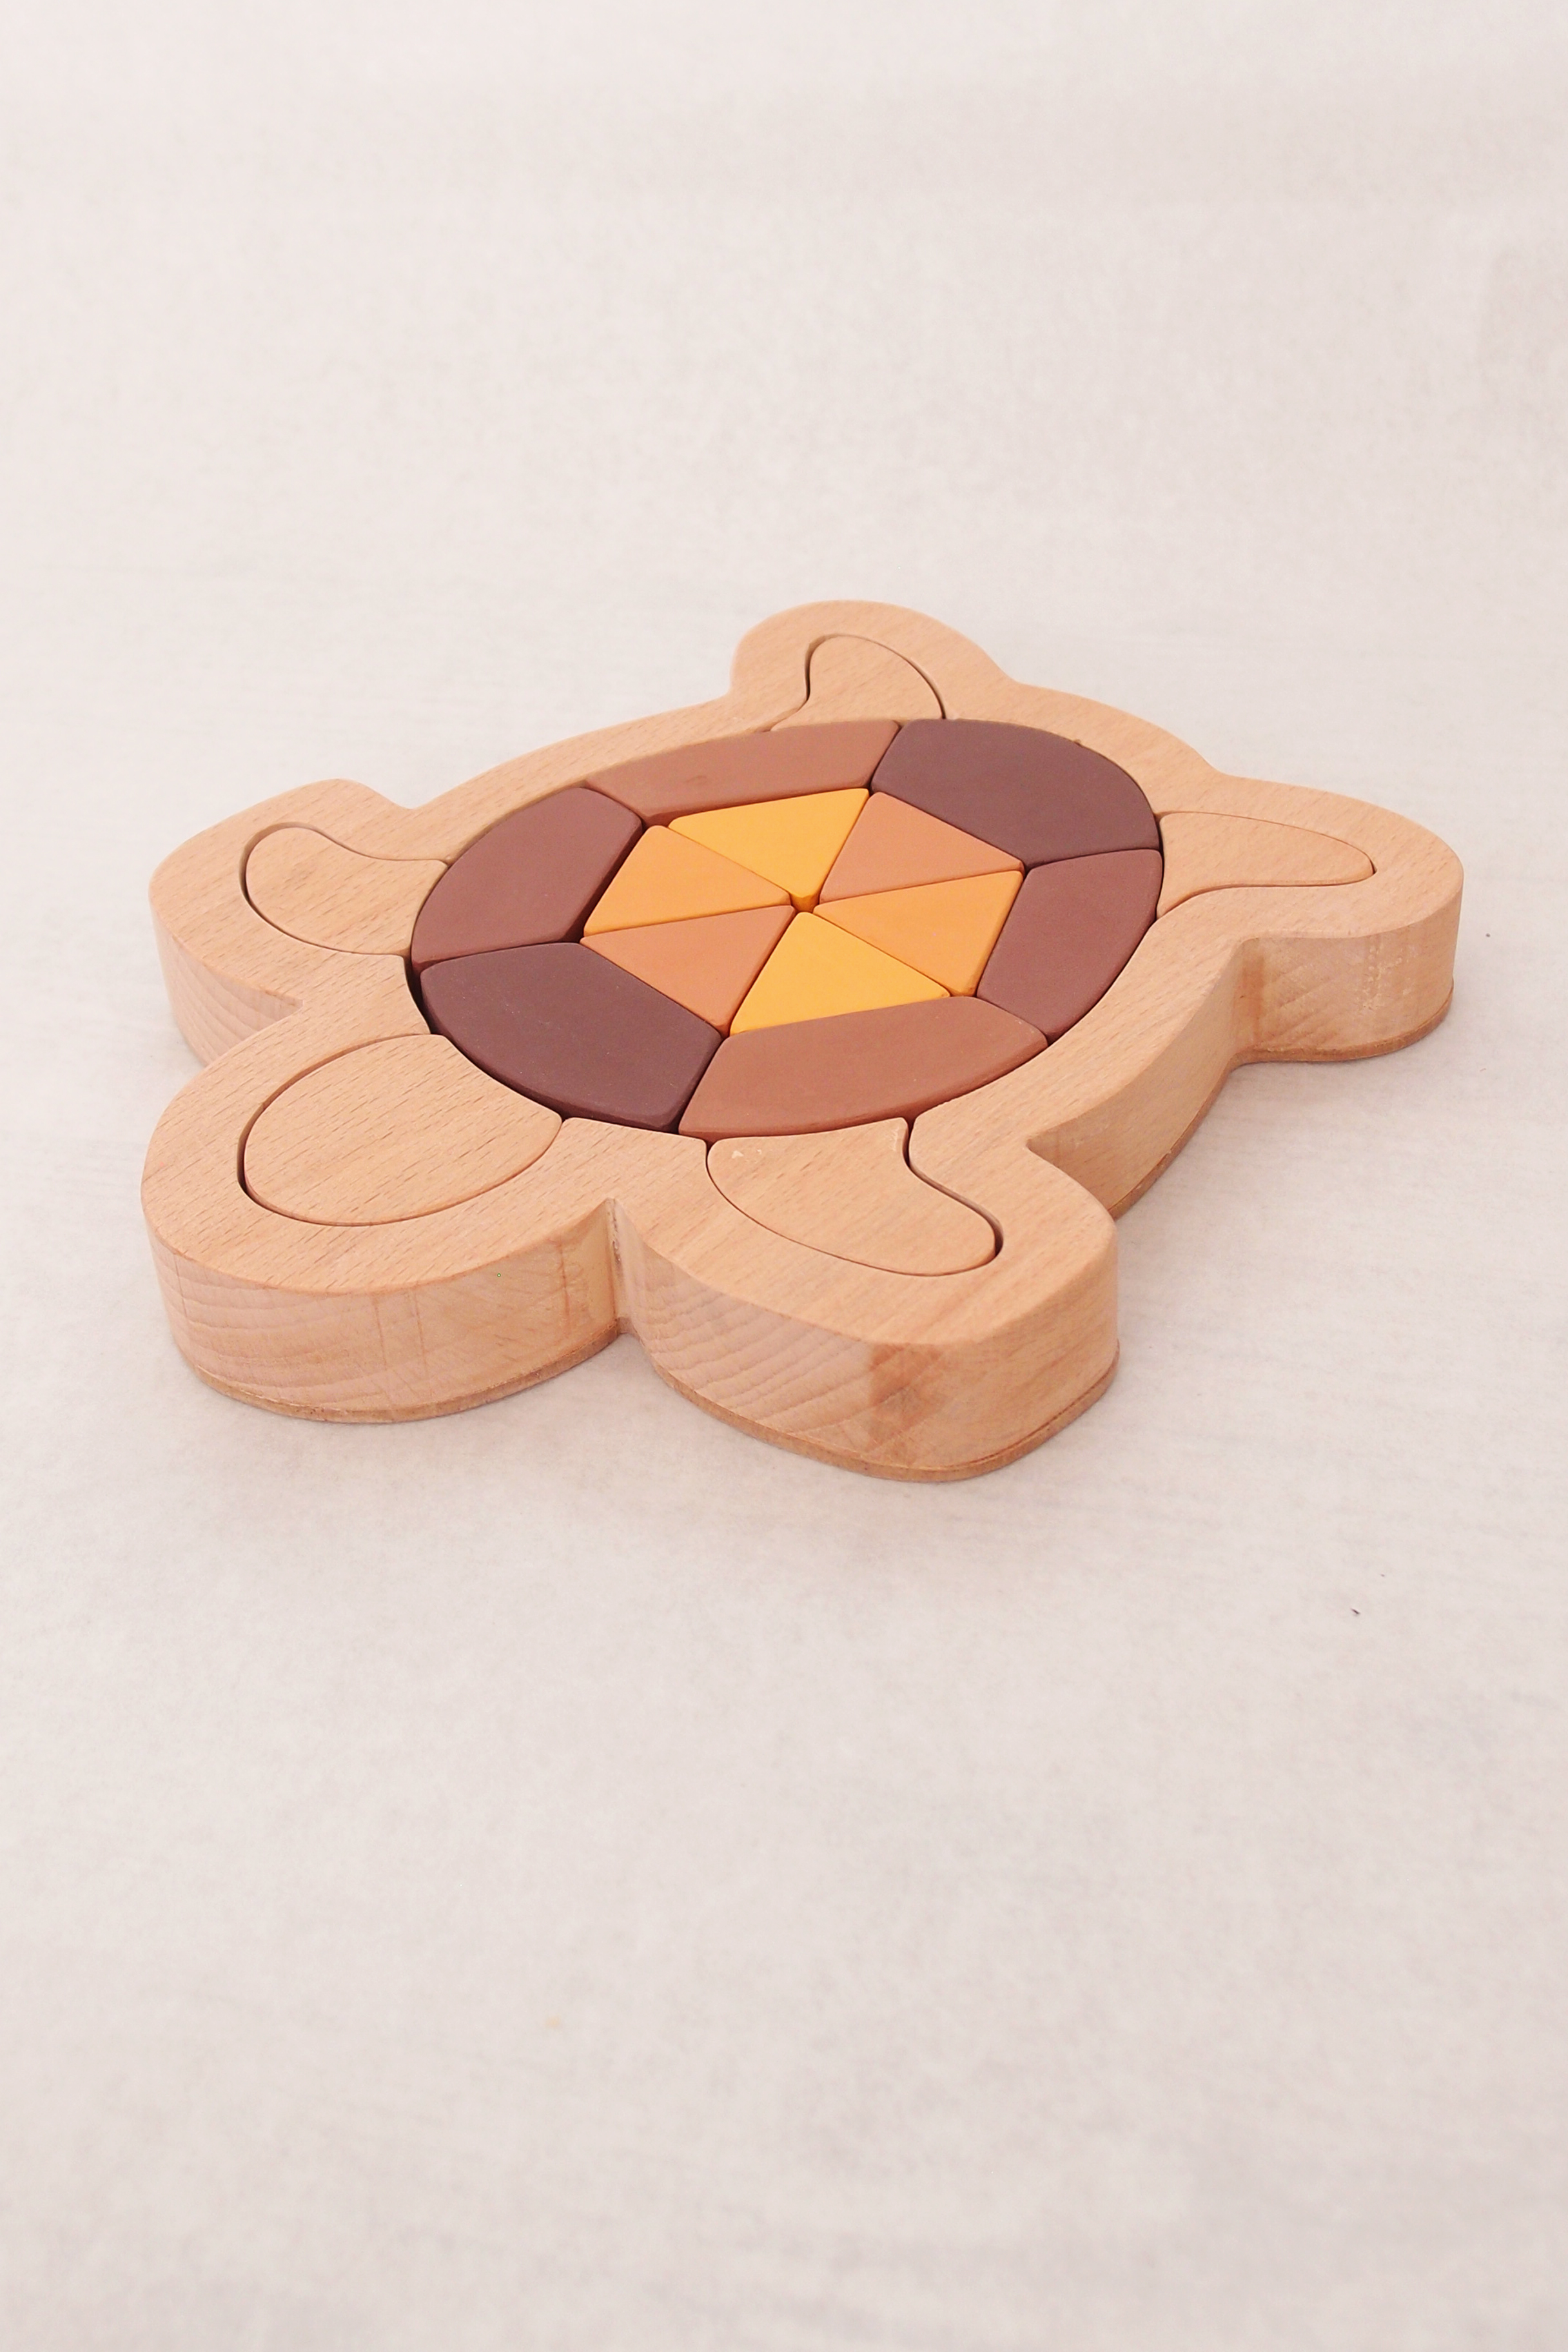 Oyuncu Kunduz Caretta Caretta Ahşap Puzzle (Üçgen Model)